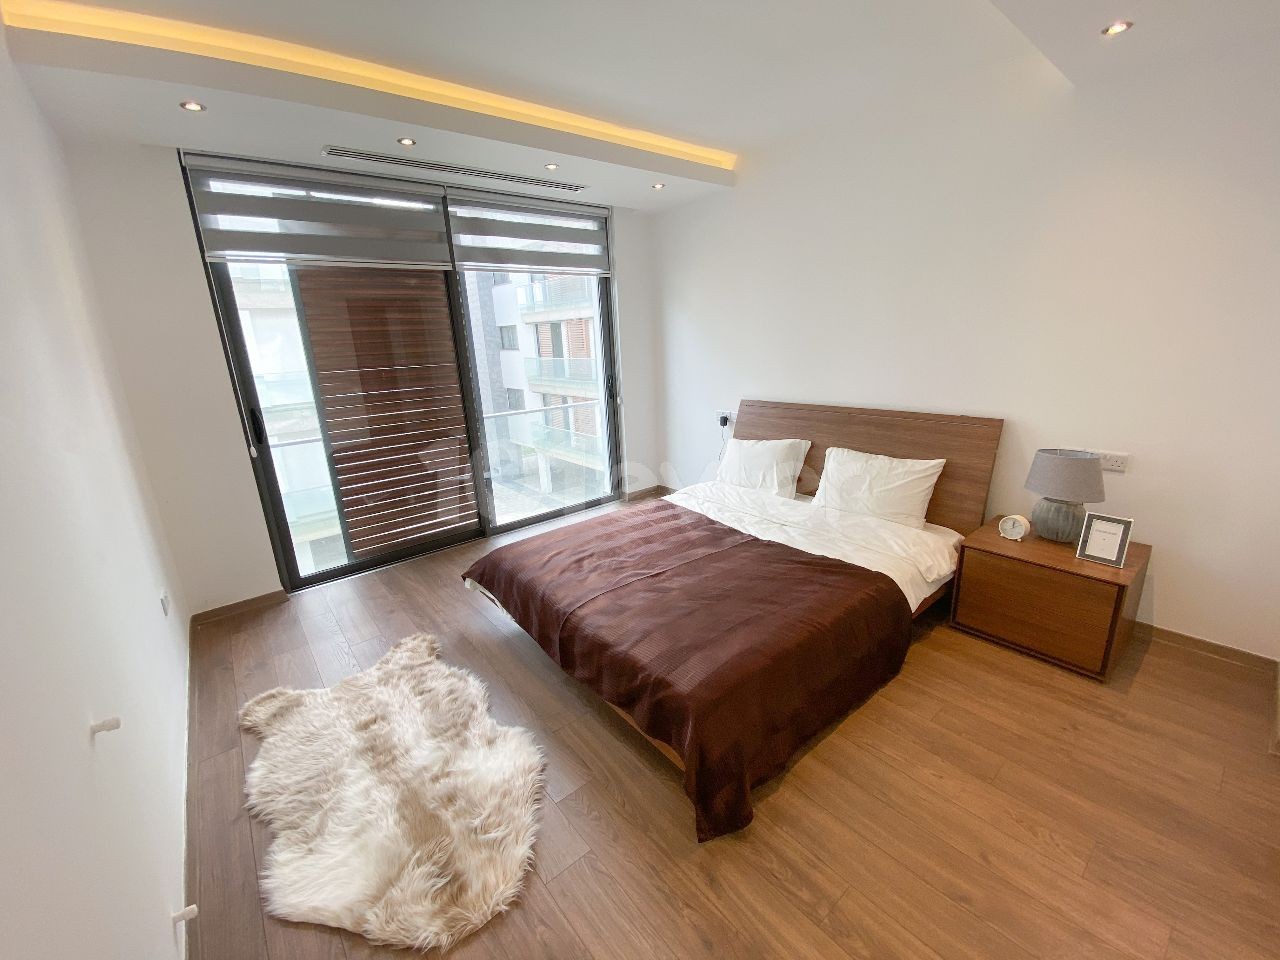 آپارتمان جدید برای فروش در سایت با حمام 3+1 والدین برای فروش در منطقه متاهان نیکوزیا